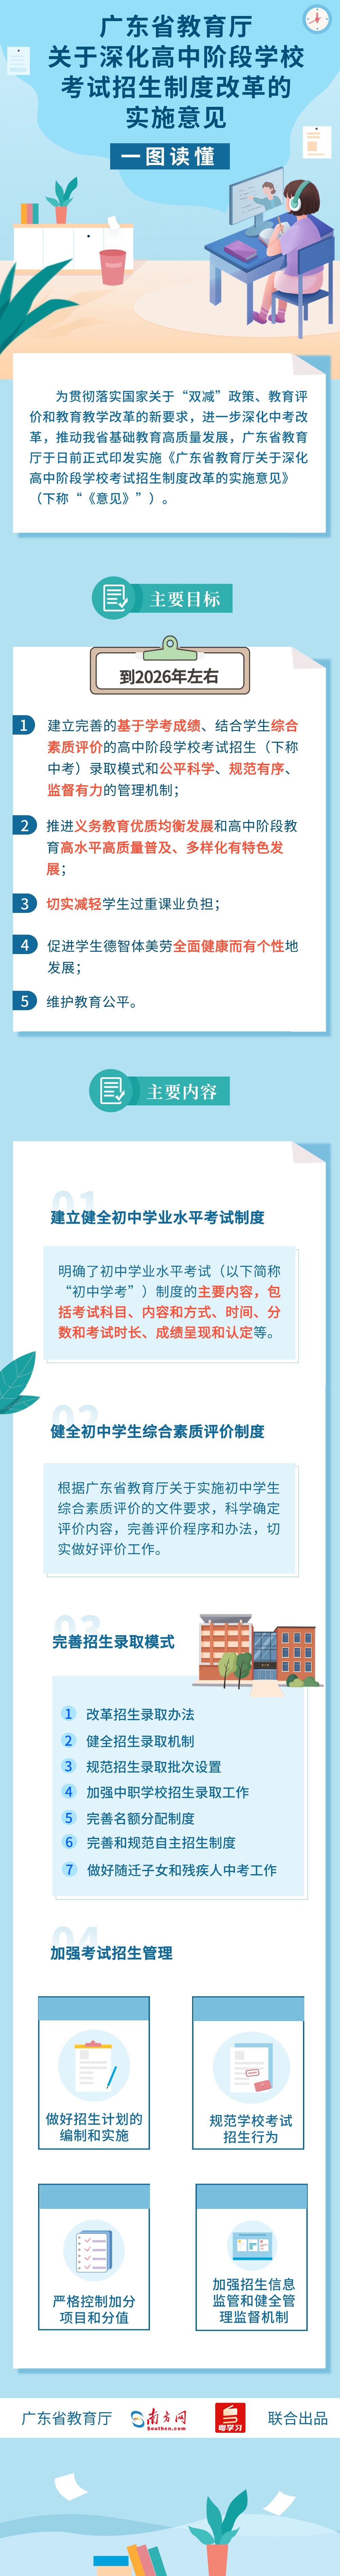 广东省教育厅 关于深化高中阶段学校考试招生制度改革的实施意见 (1).jpg